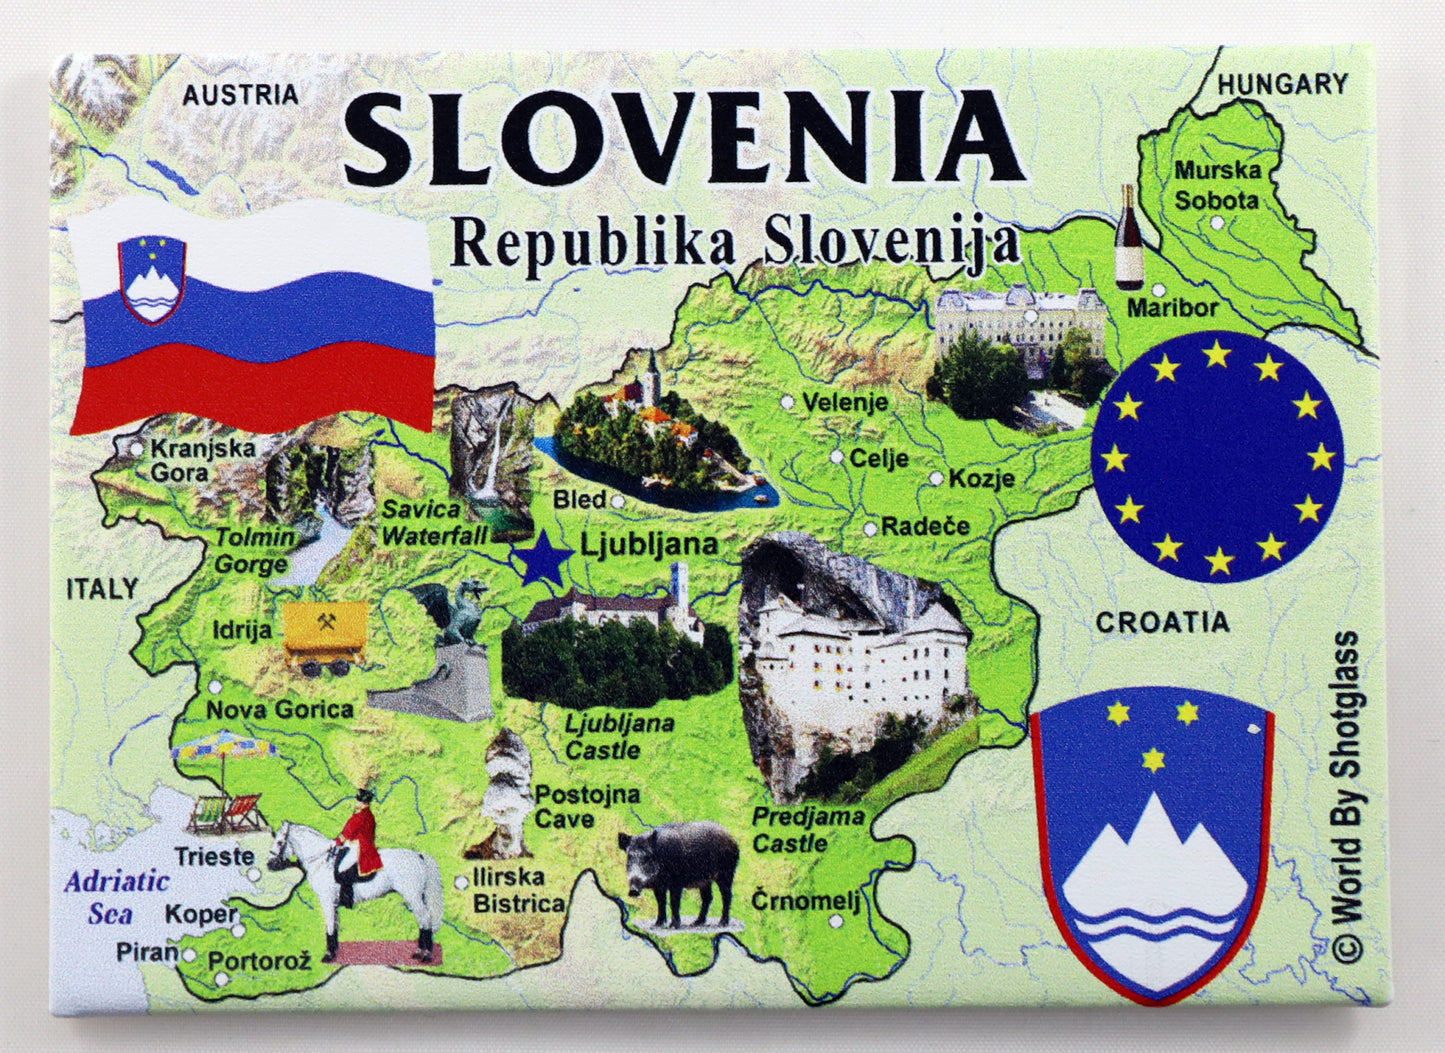 Slovenia EU Series Souvenir Fridge Magnet 2.5 inches X 3.5 inches